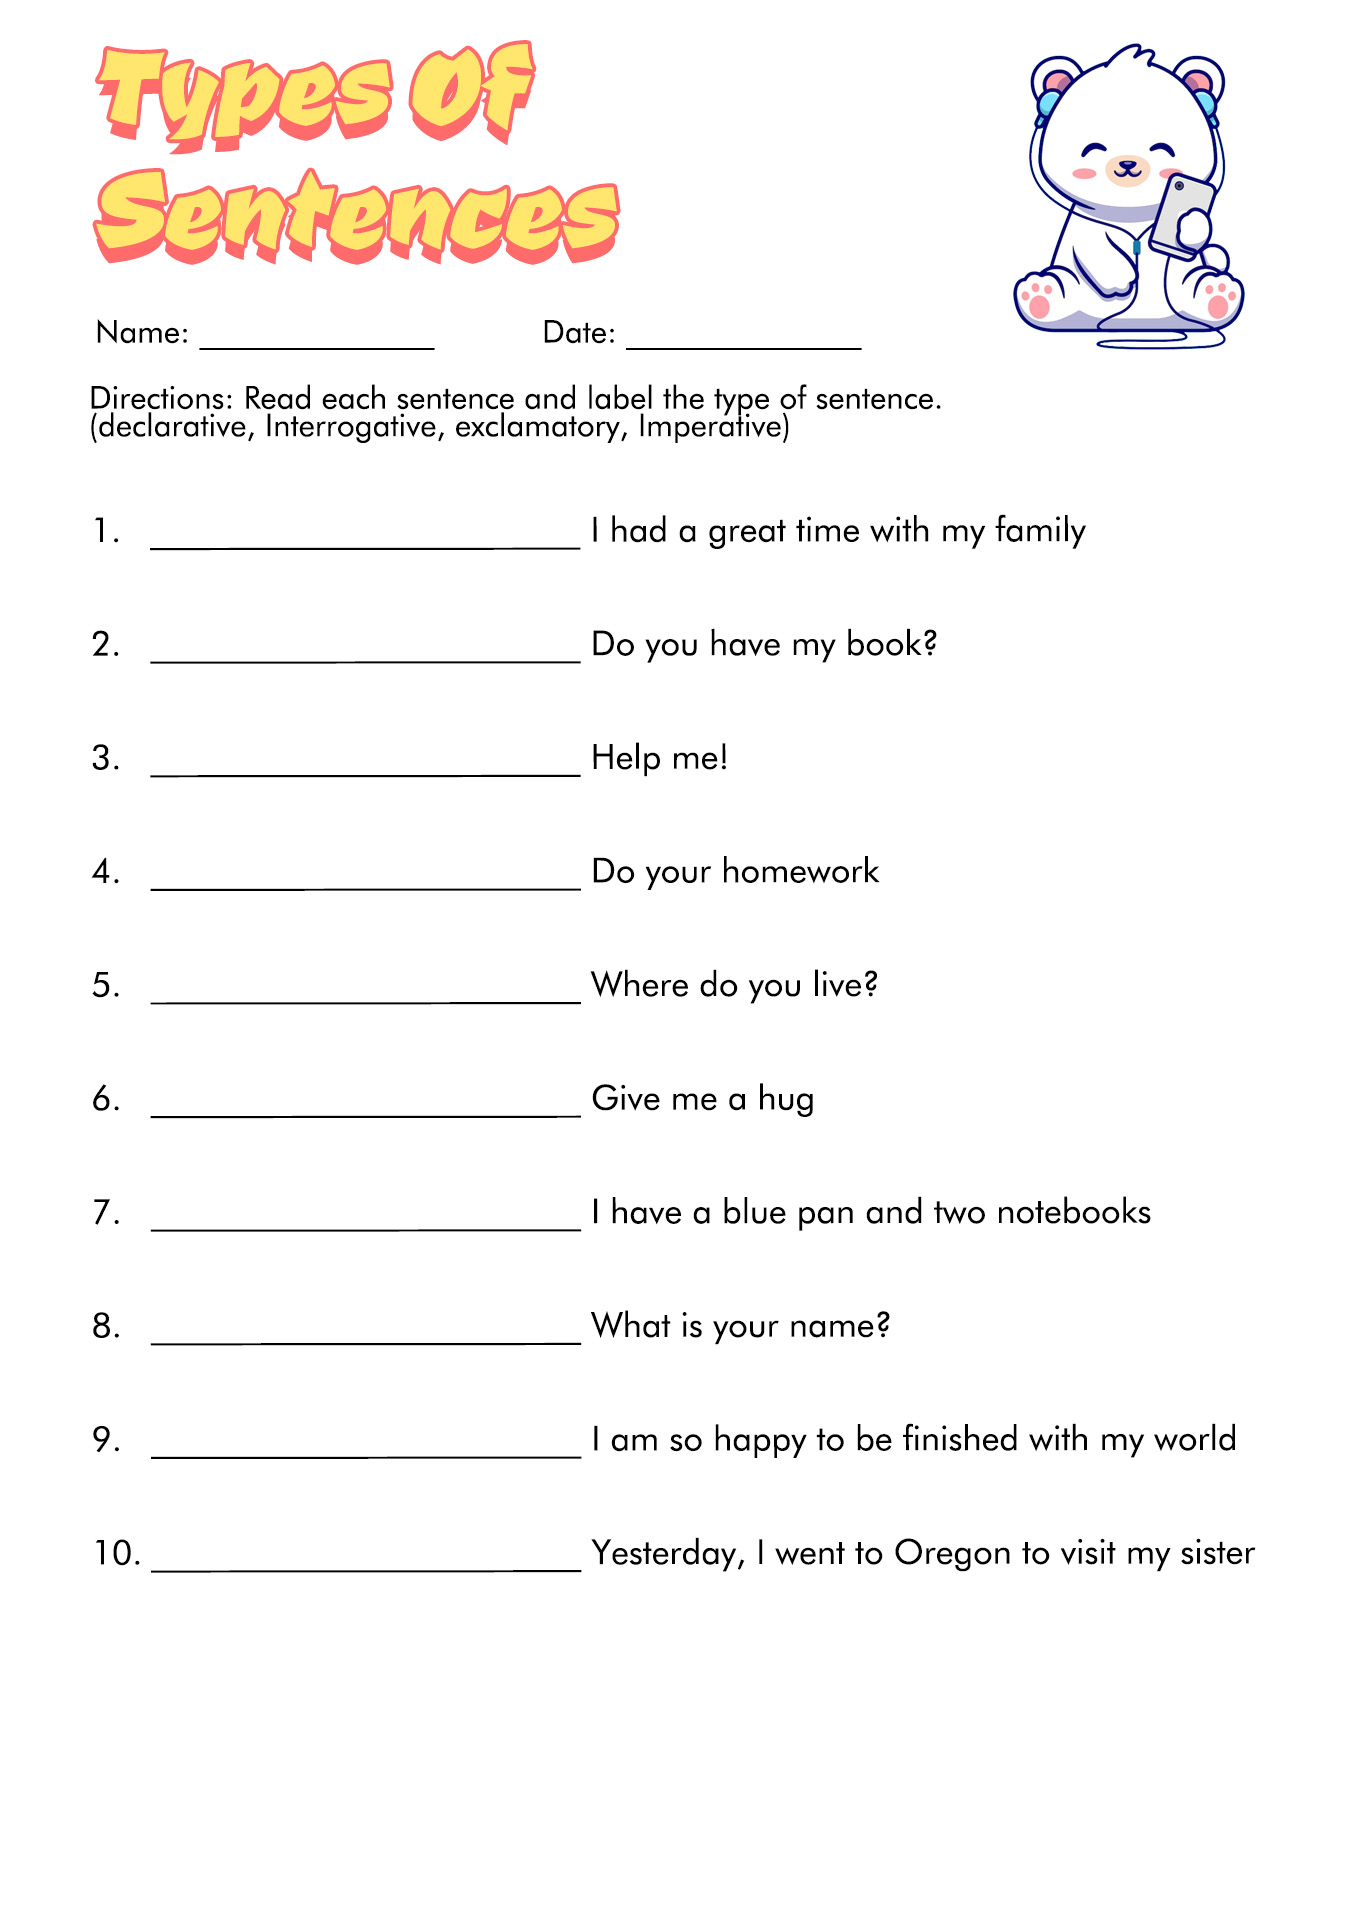 identifying-types-of-sentences-worksheet